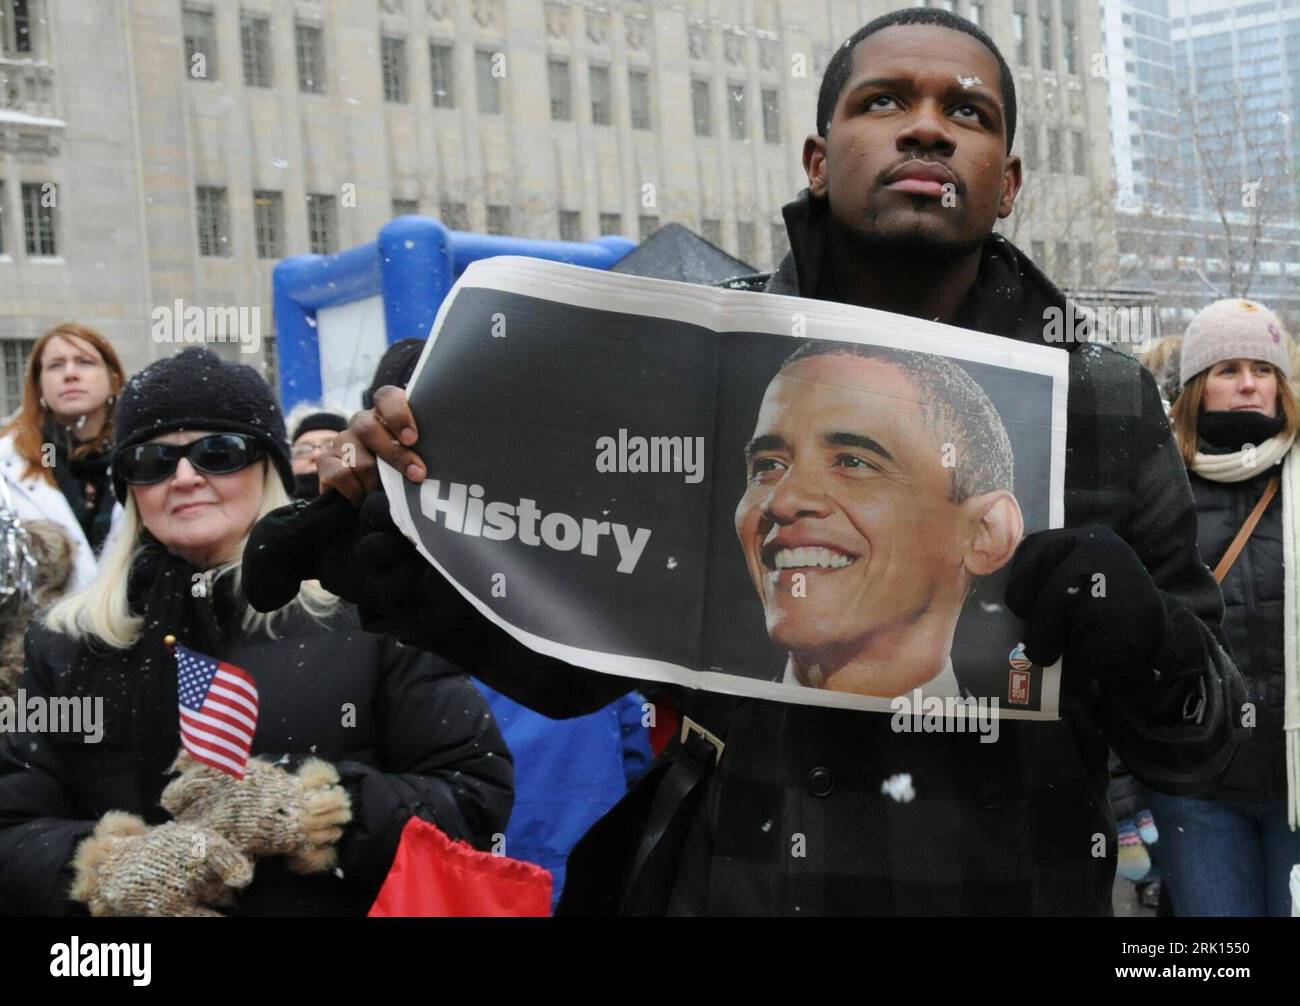 Zuschauer mit Barack Obama-Ritratto - storia - während dessen Vereidigung zum 44. Präsidenten der Vereinigten Staaten von Amerika a Washington PUBLICATIONxNOTxINxCHN Foto Stock